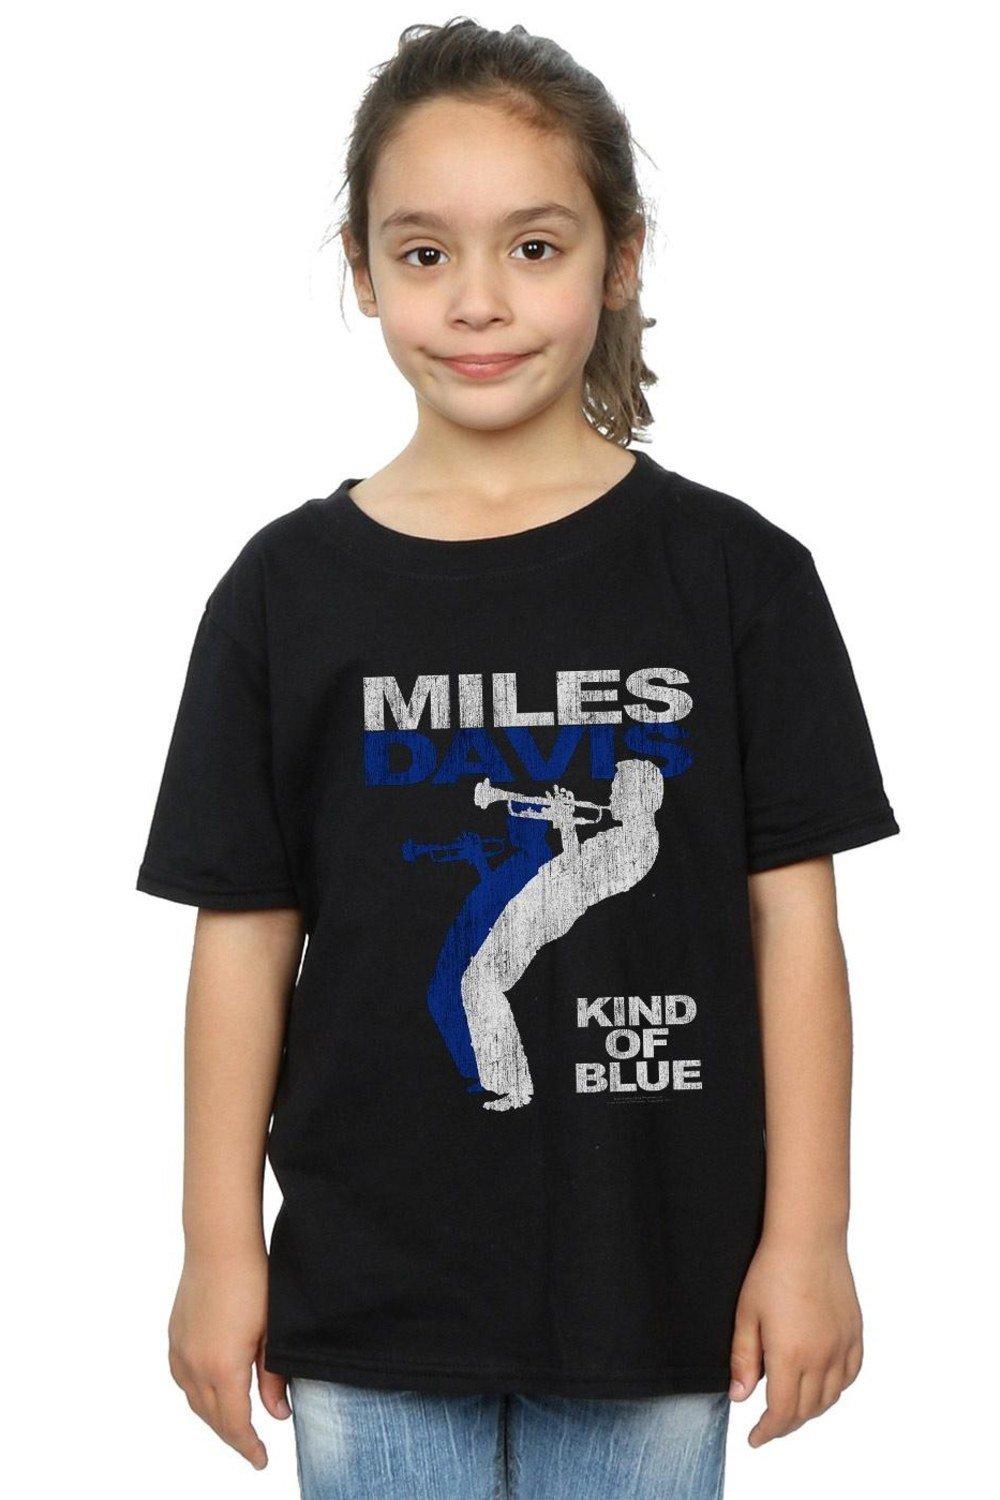 Хлопковая футболка Kind Of Blue с потертостями Miles Davis, черный davis miles kind of blue coloured vinyl lp конверты внутренние coex для грампластинок 12 25шт набор